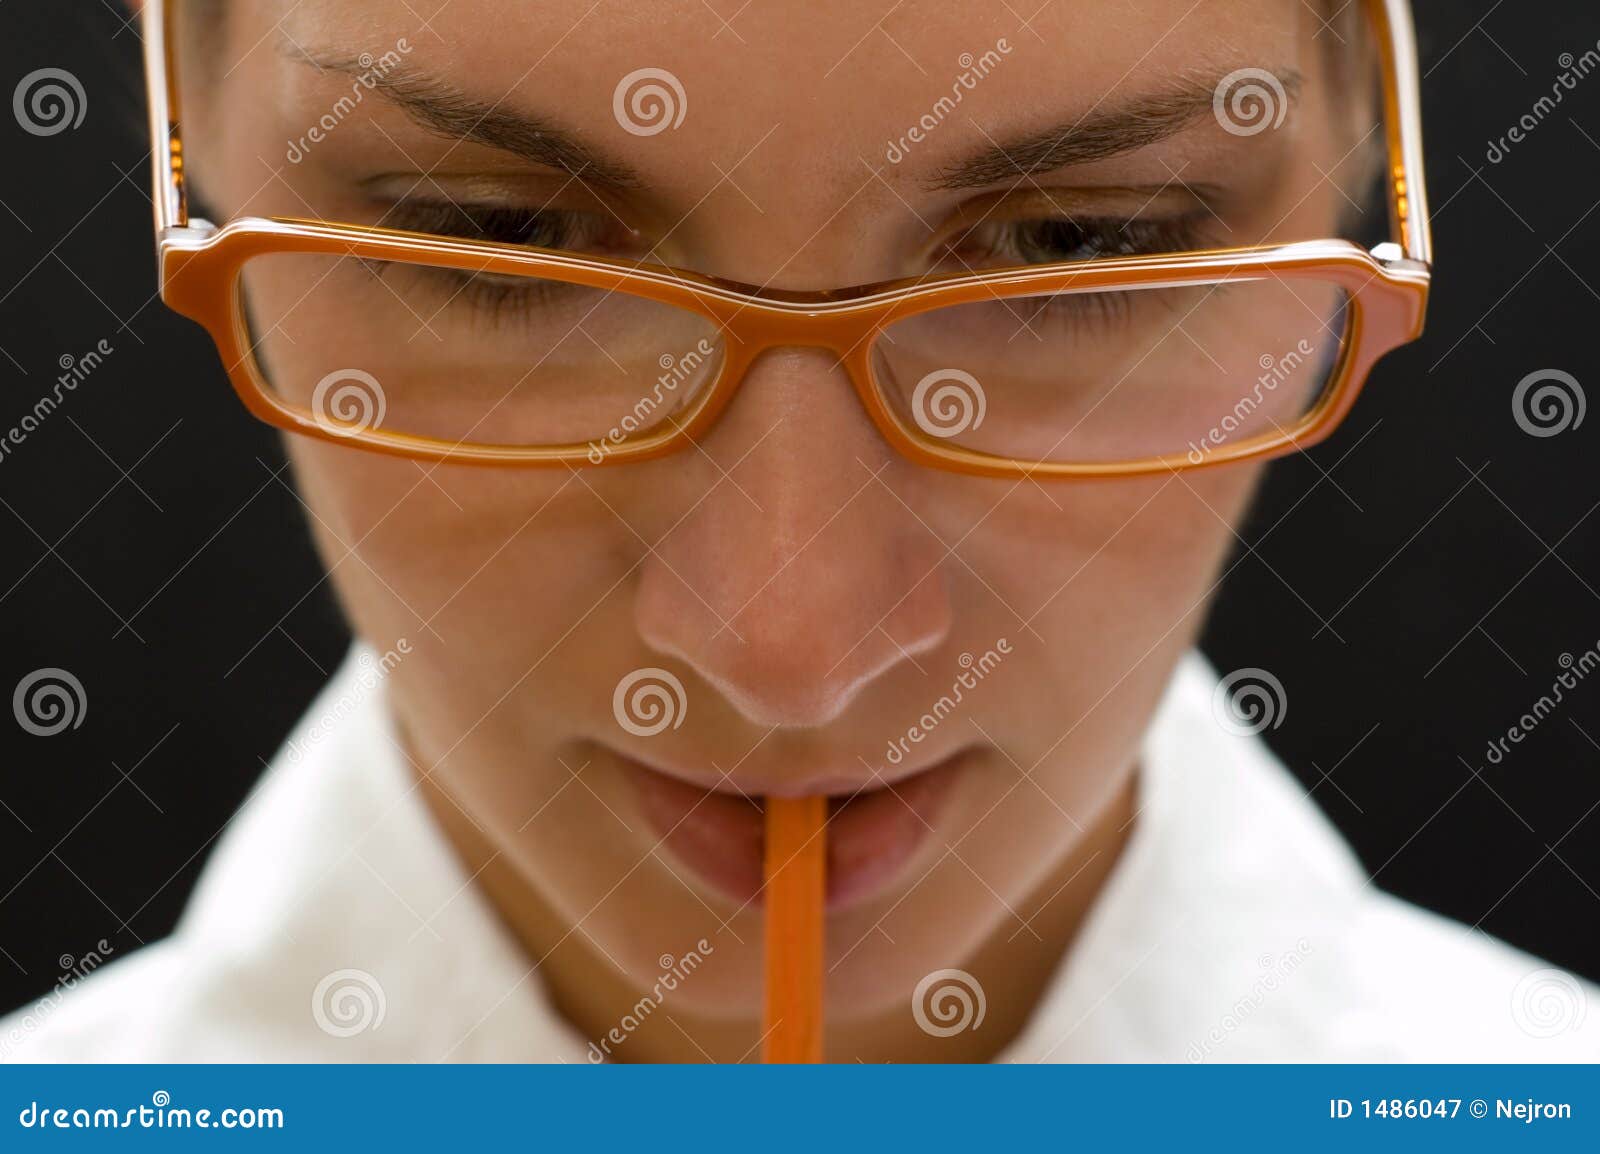 Pomysł. Zdjęcia okularów biznesowych pomarańczowa kobieta